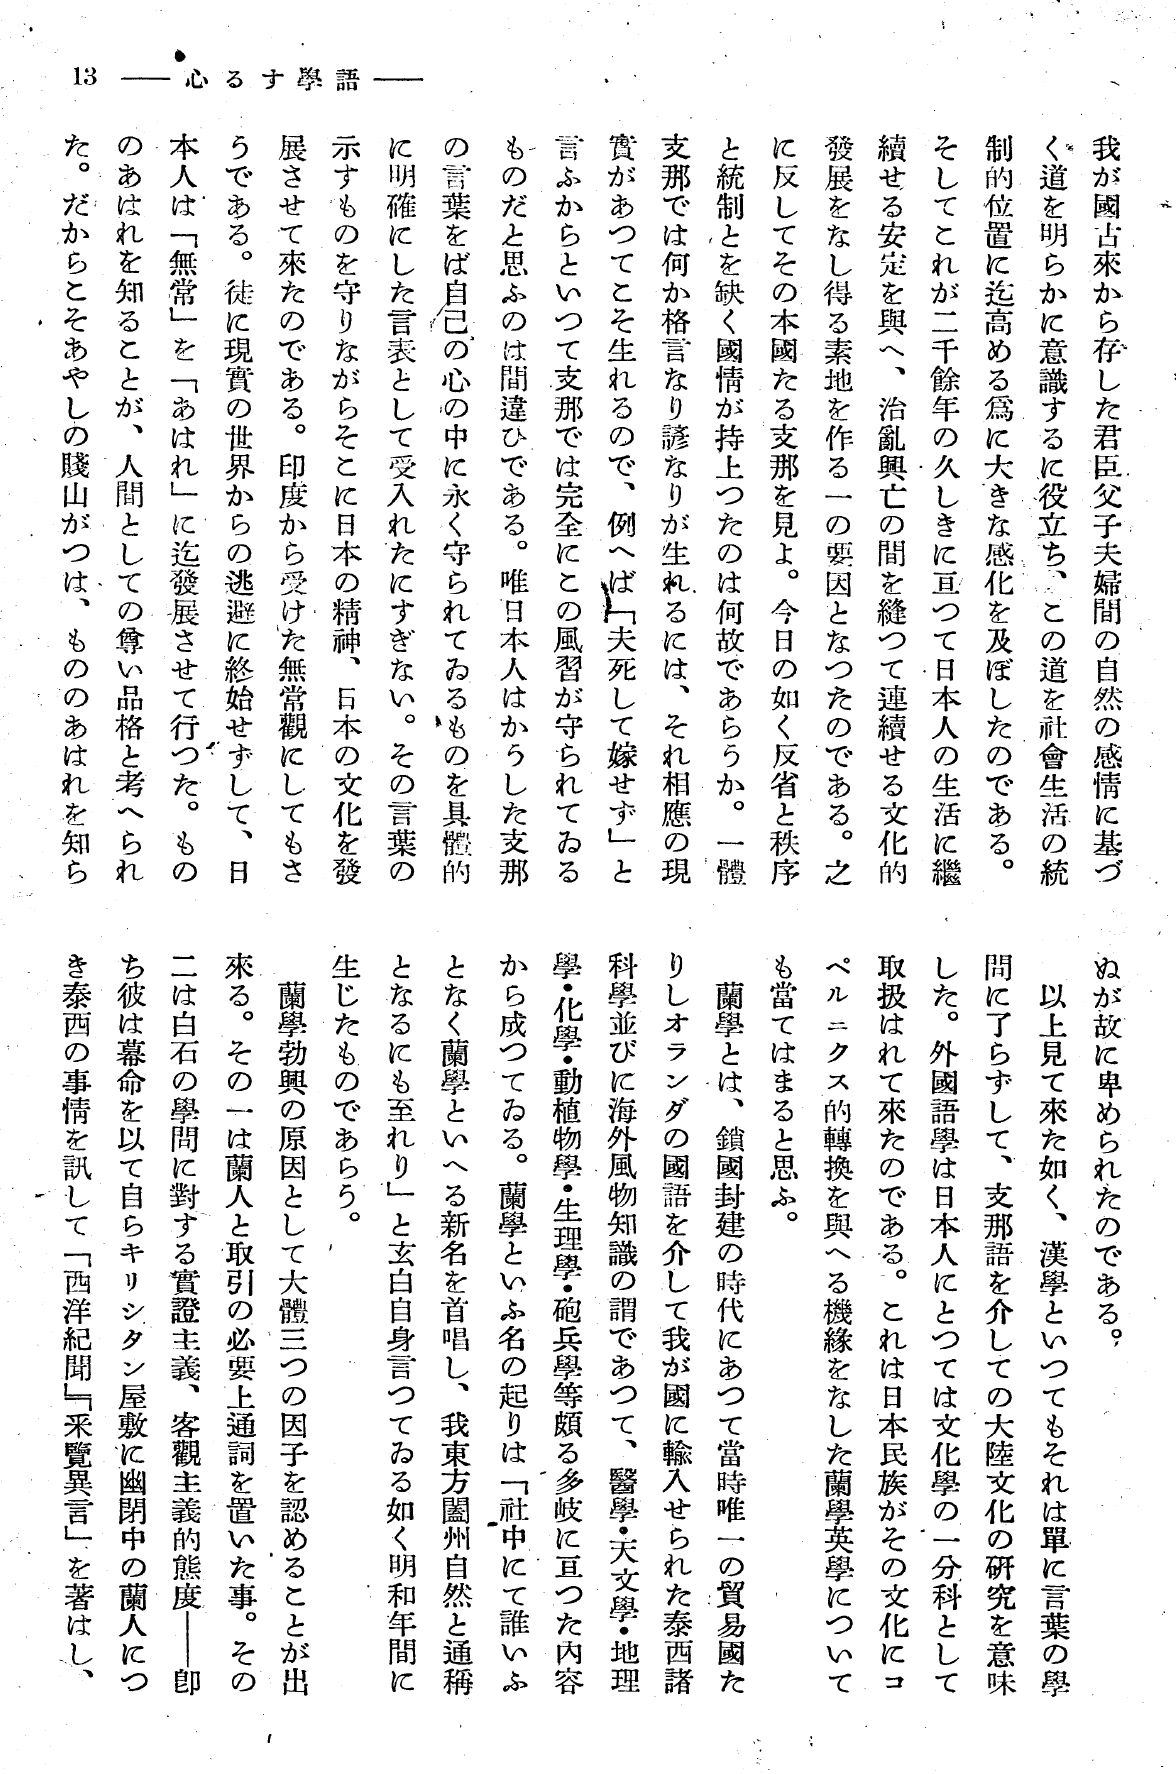 報國団雑誌 第19号 103 西尾孝 語学する心03.jpg